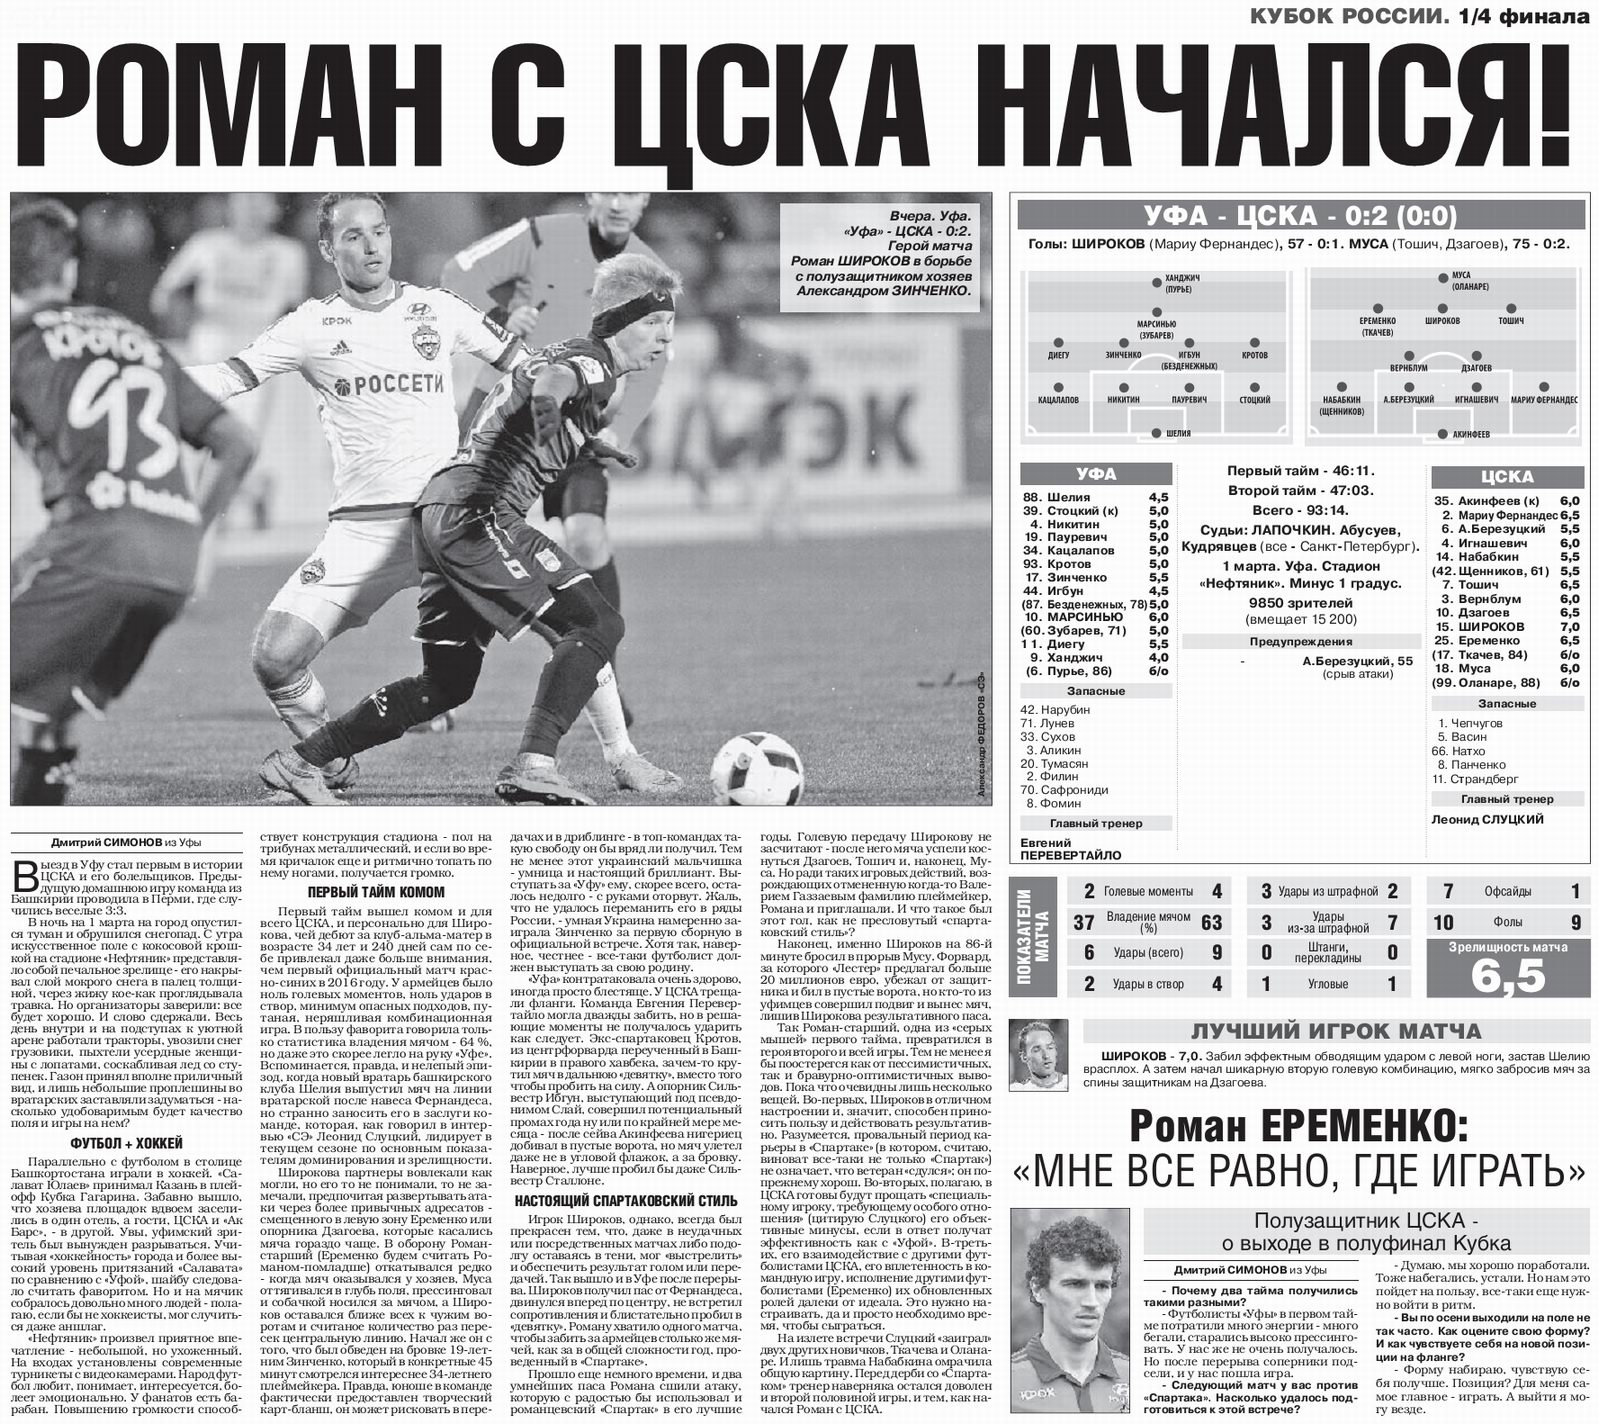 2016-03-01.Ufa-CSKA